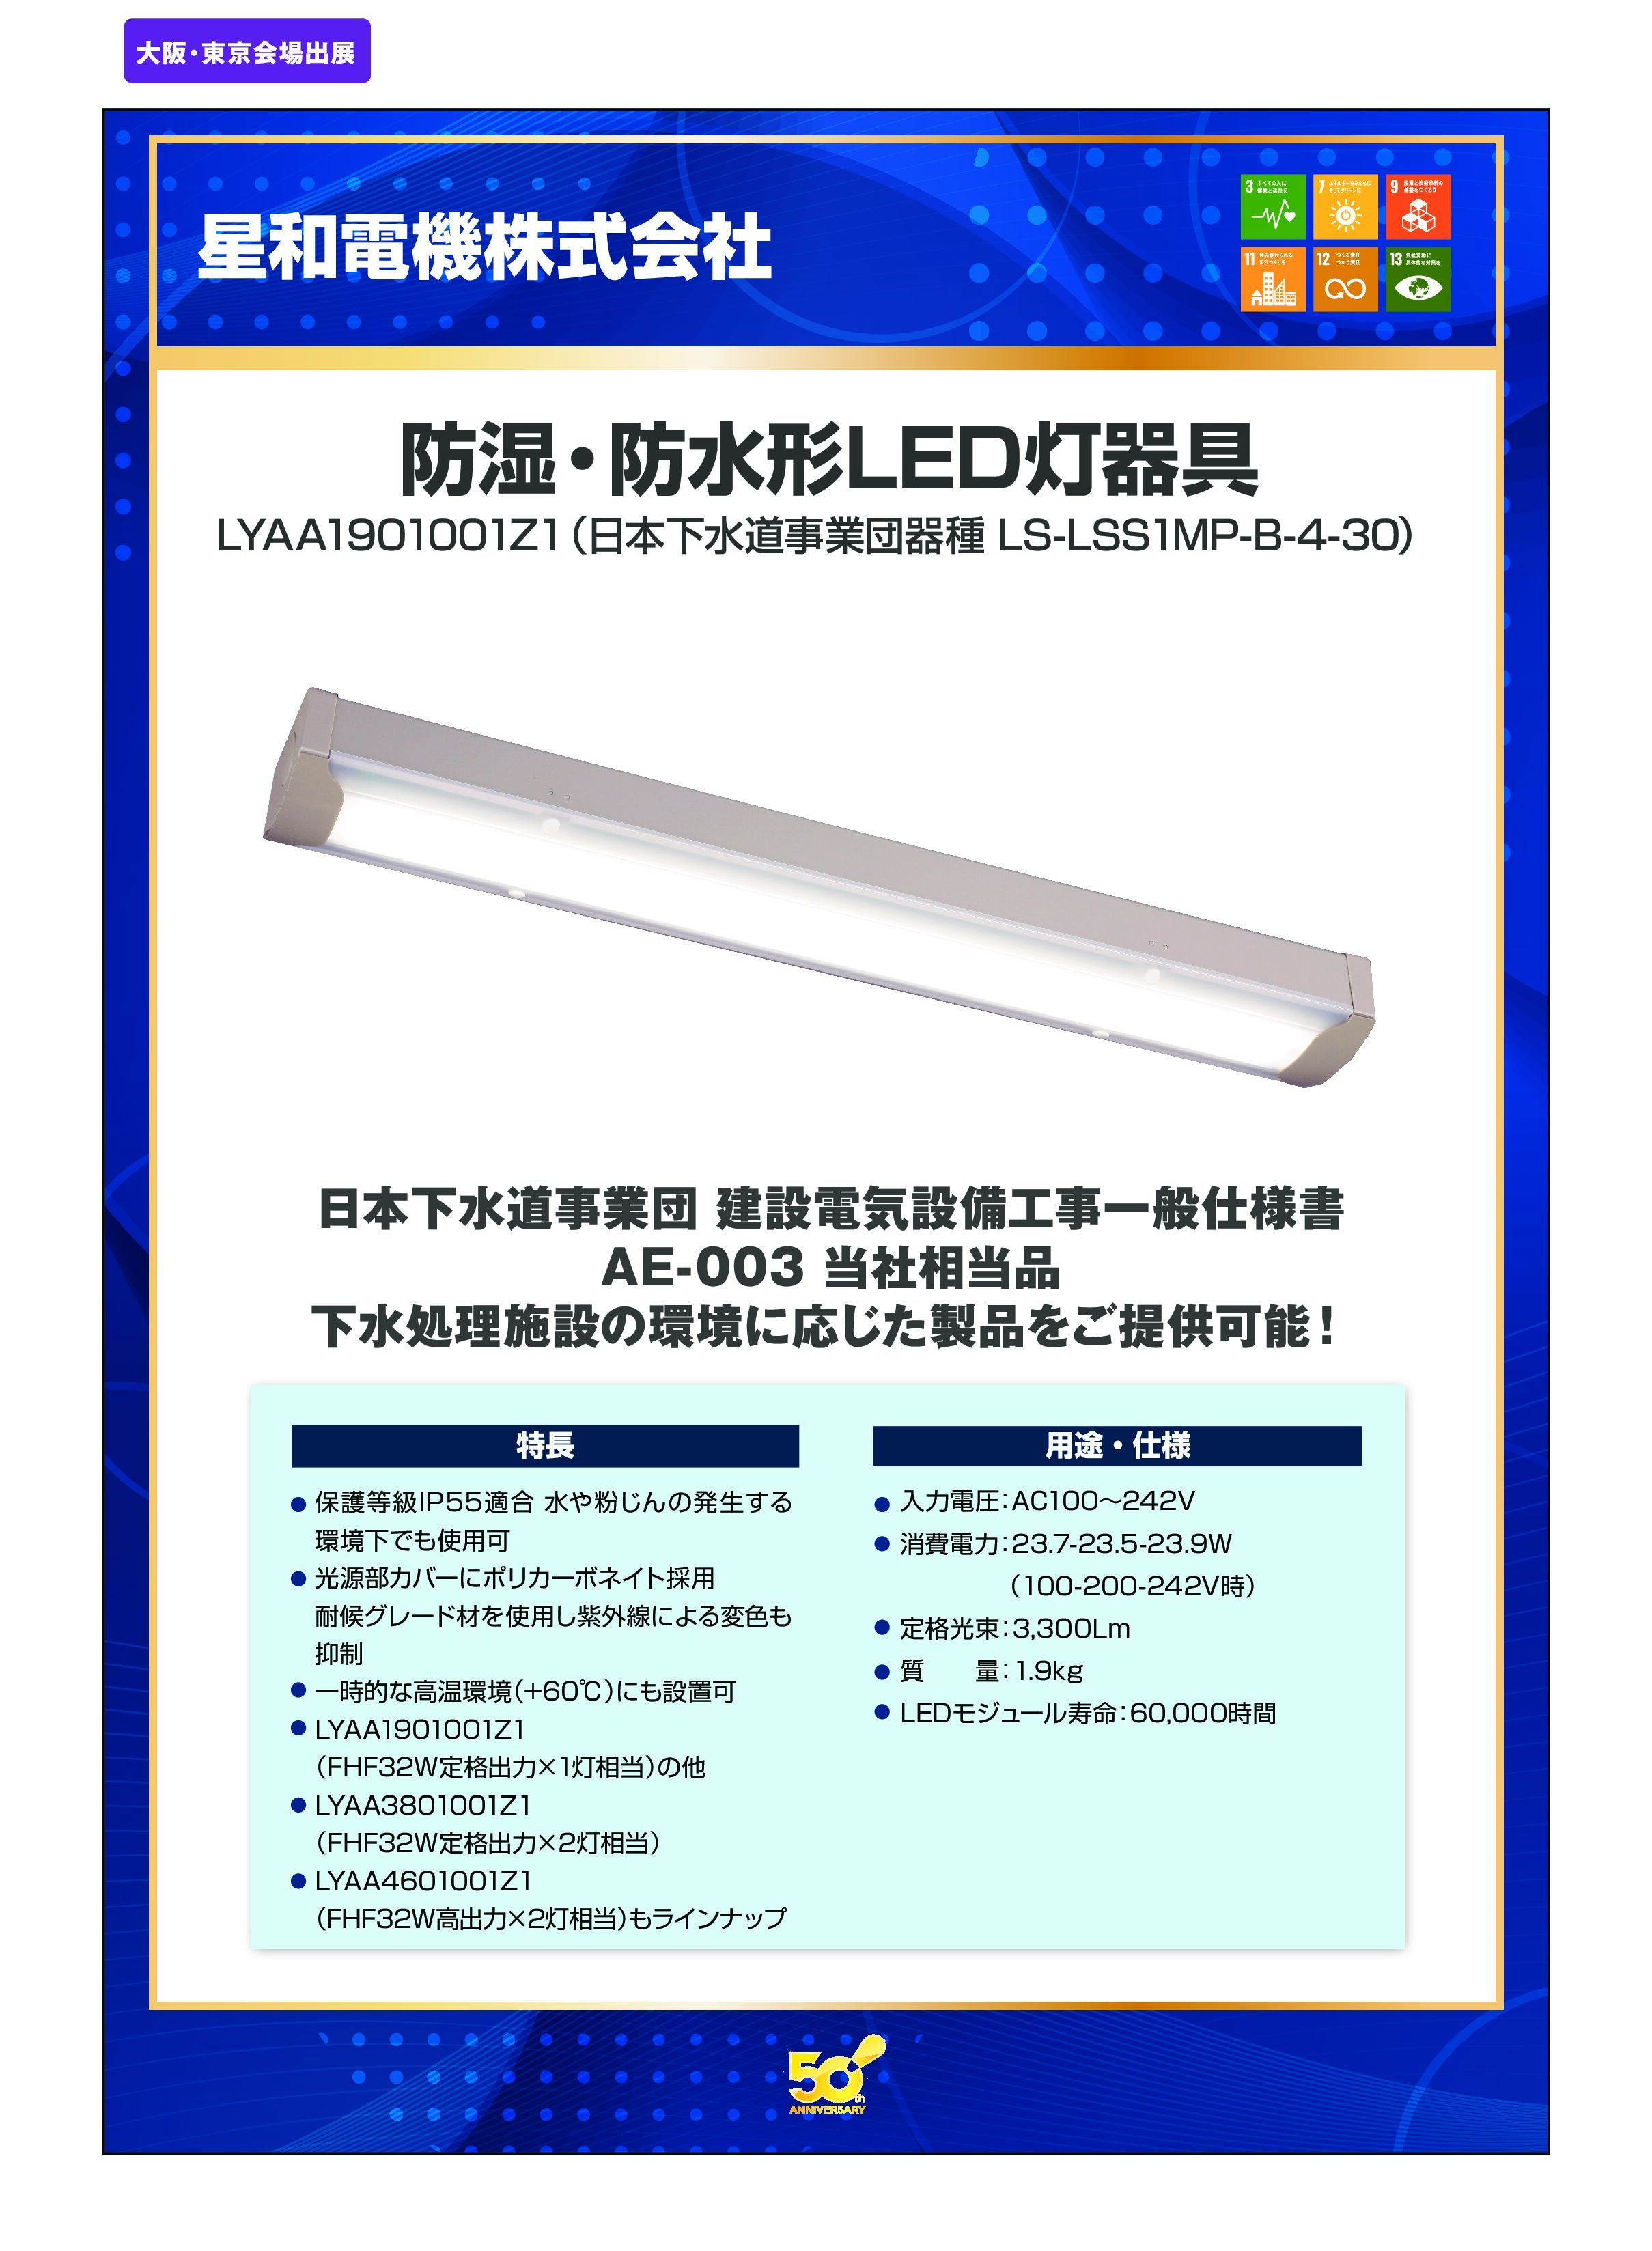 「防湿・防水形LED灯器具」星和電機株式会社の画像